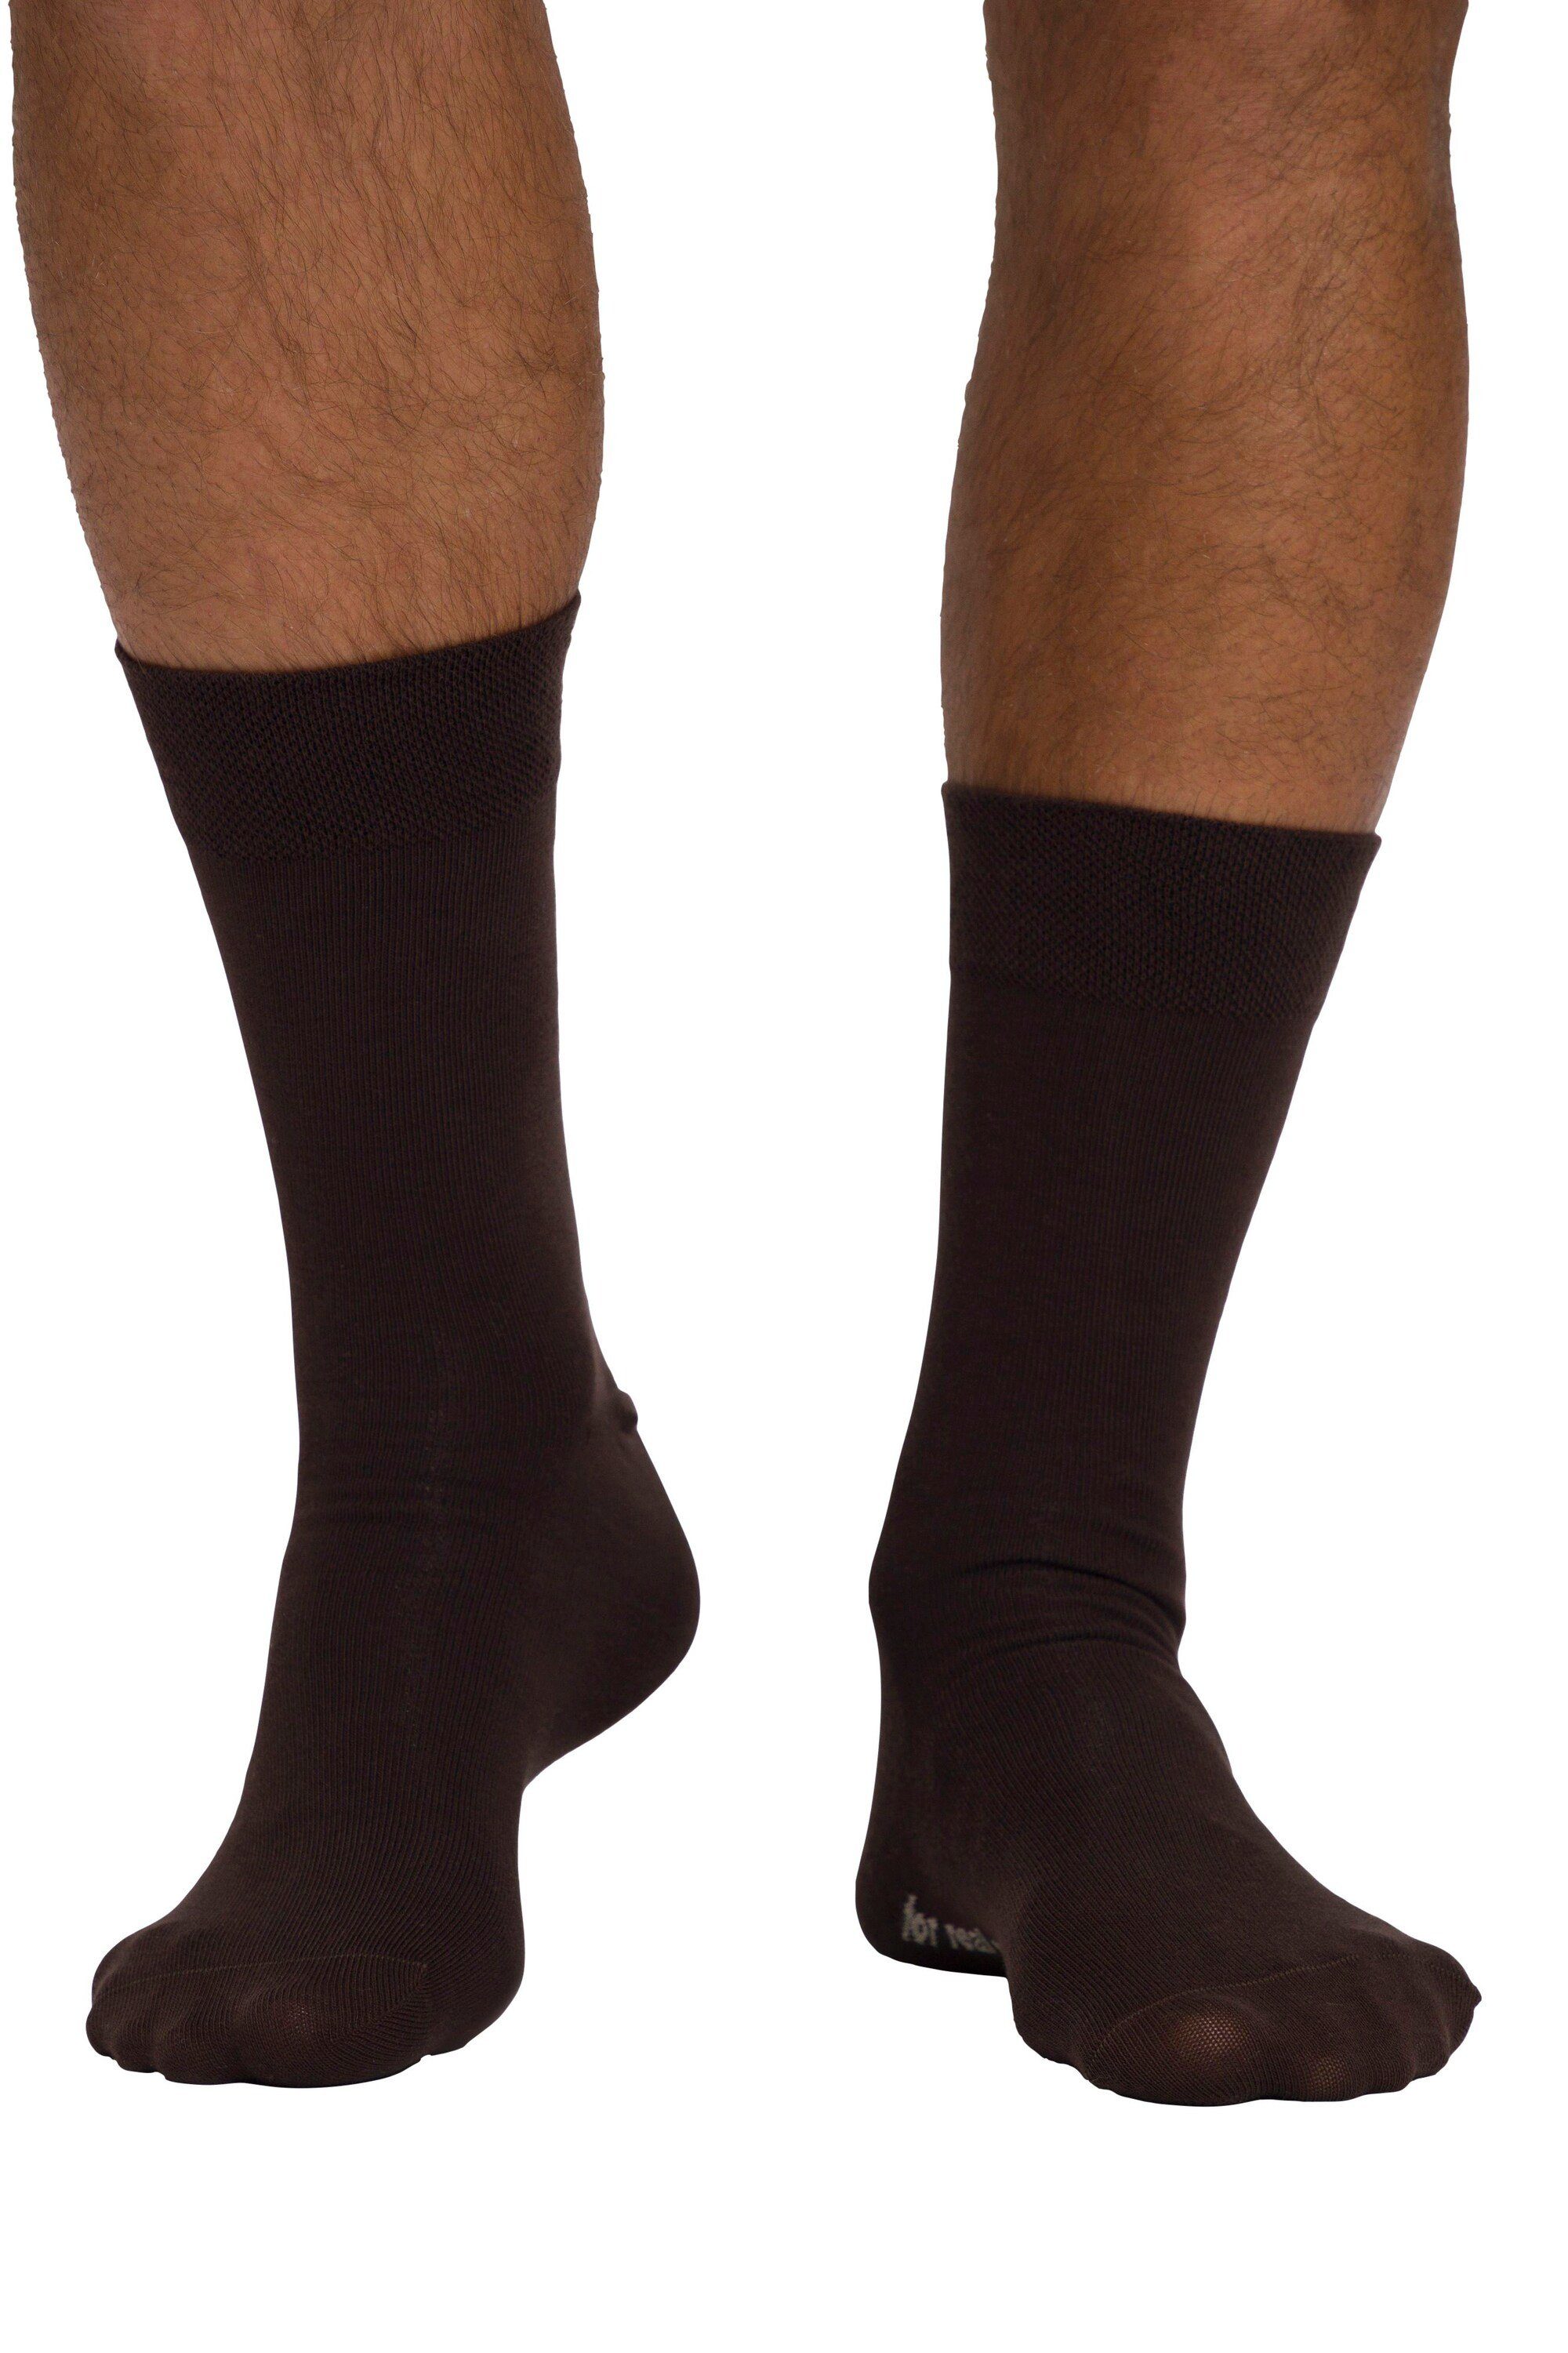 Rauten-Muster braun JP1880 Komfort-Bündchen Socken 2er-Pack (2-Paar) Basicsocken